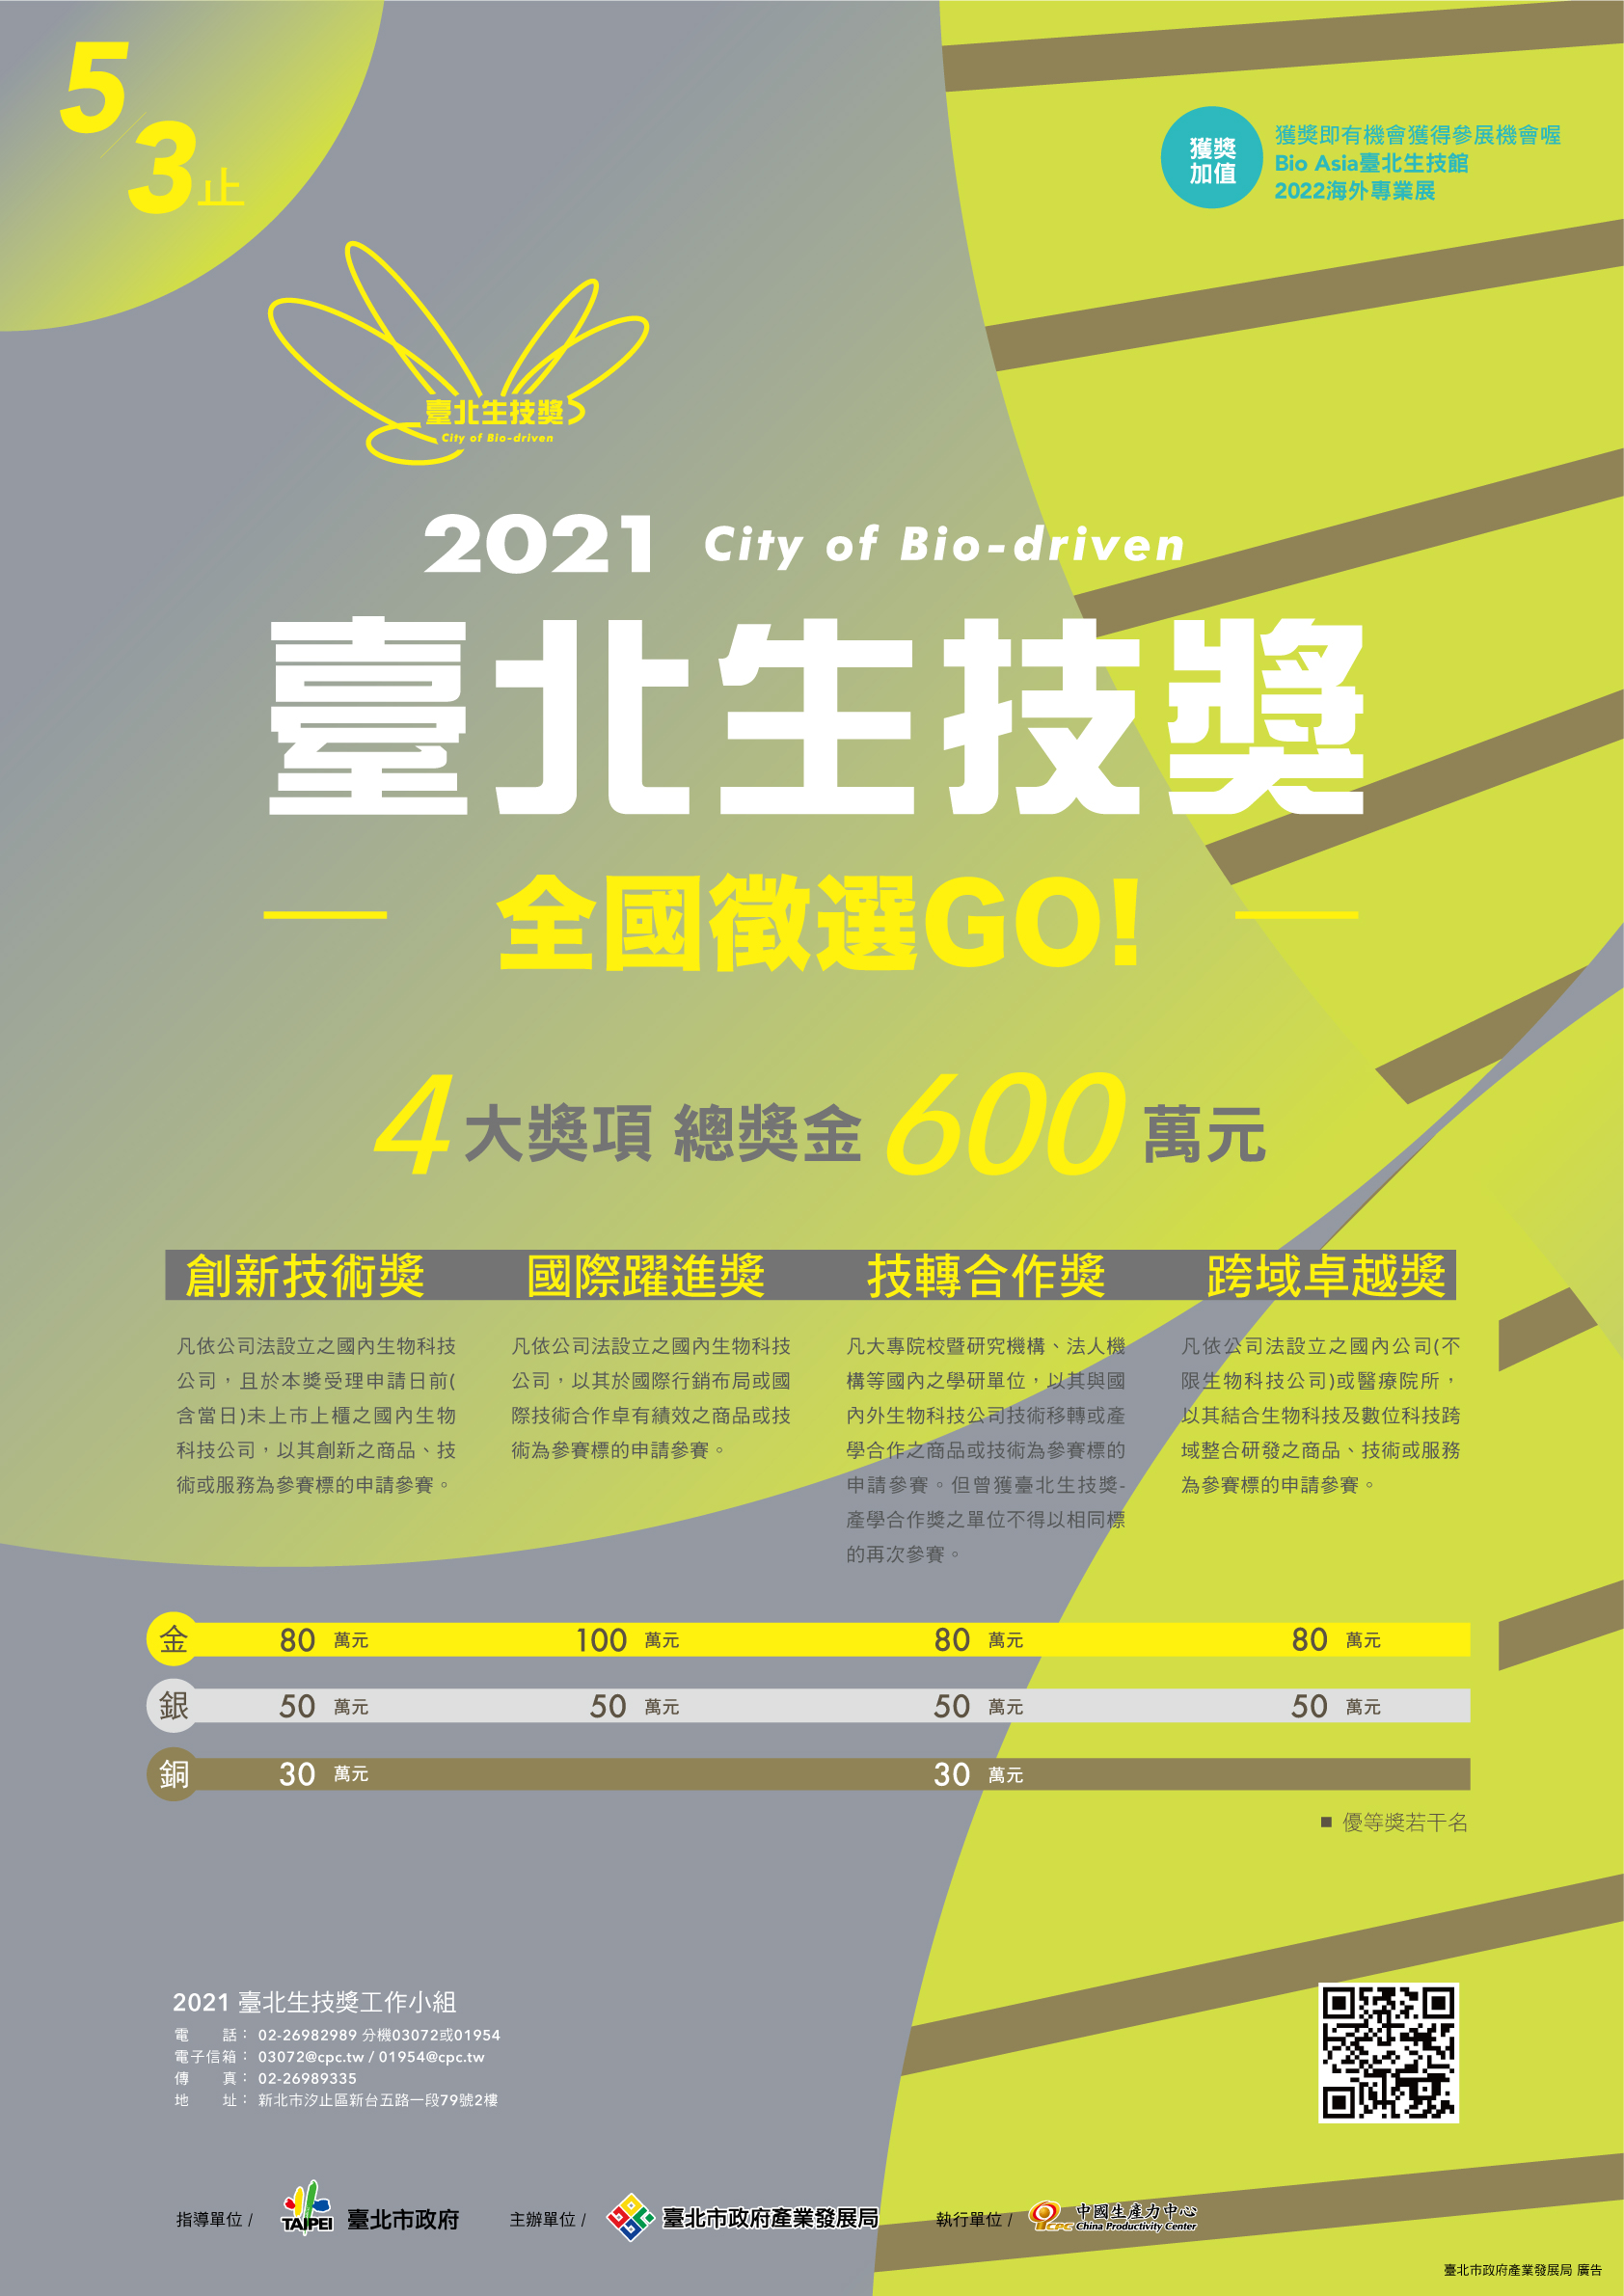 【活動】財團法人中國生產力中心「2021臺北生技獎」